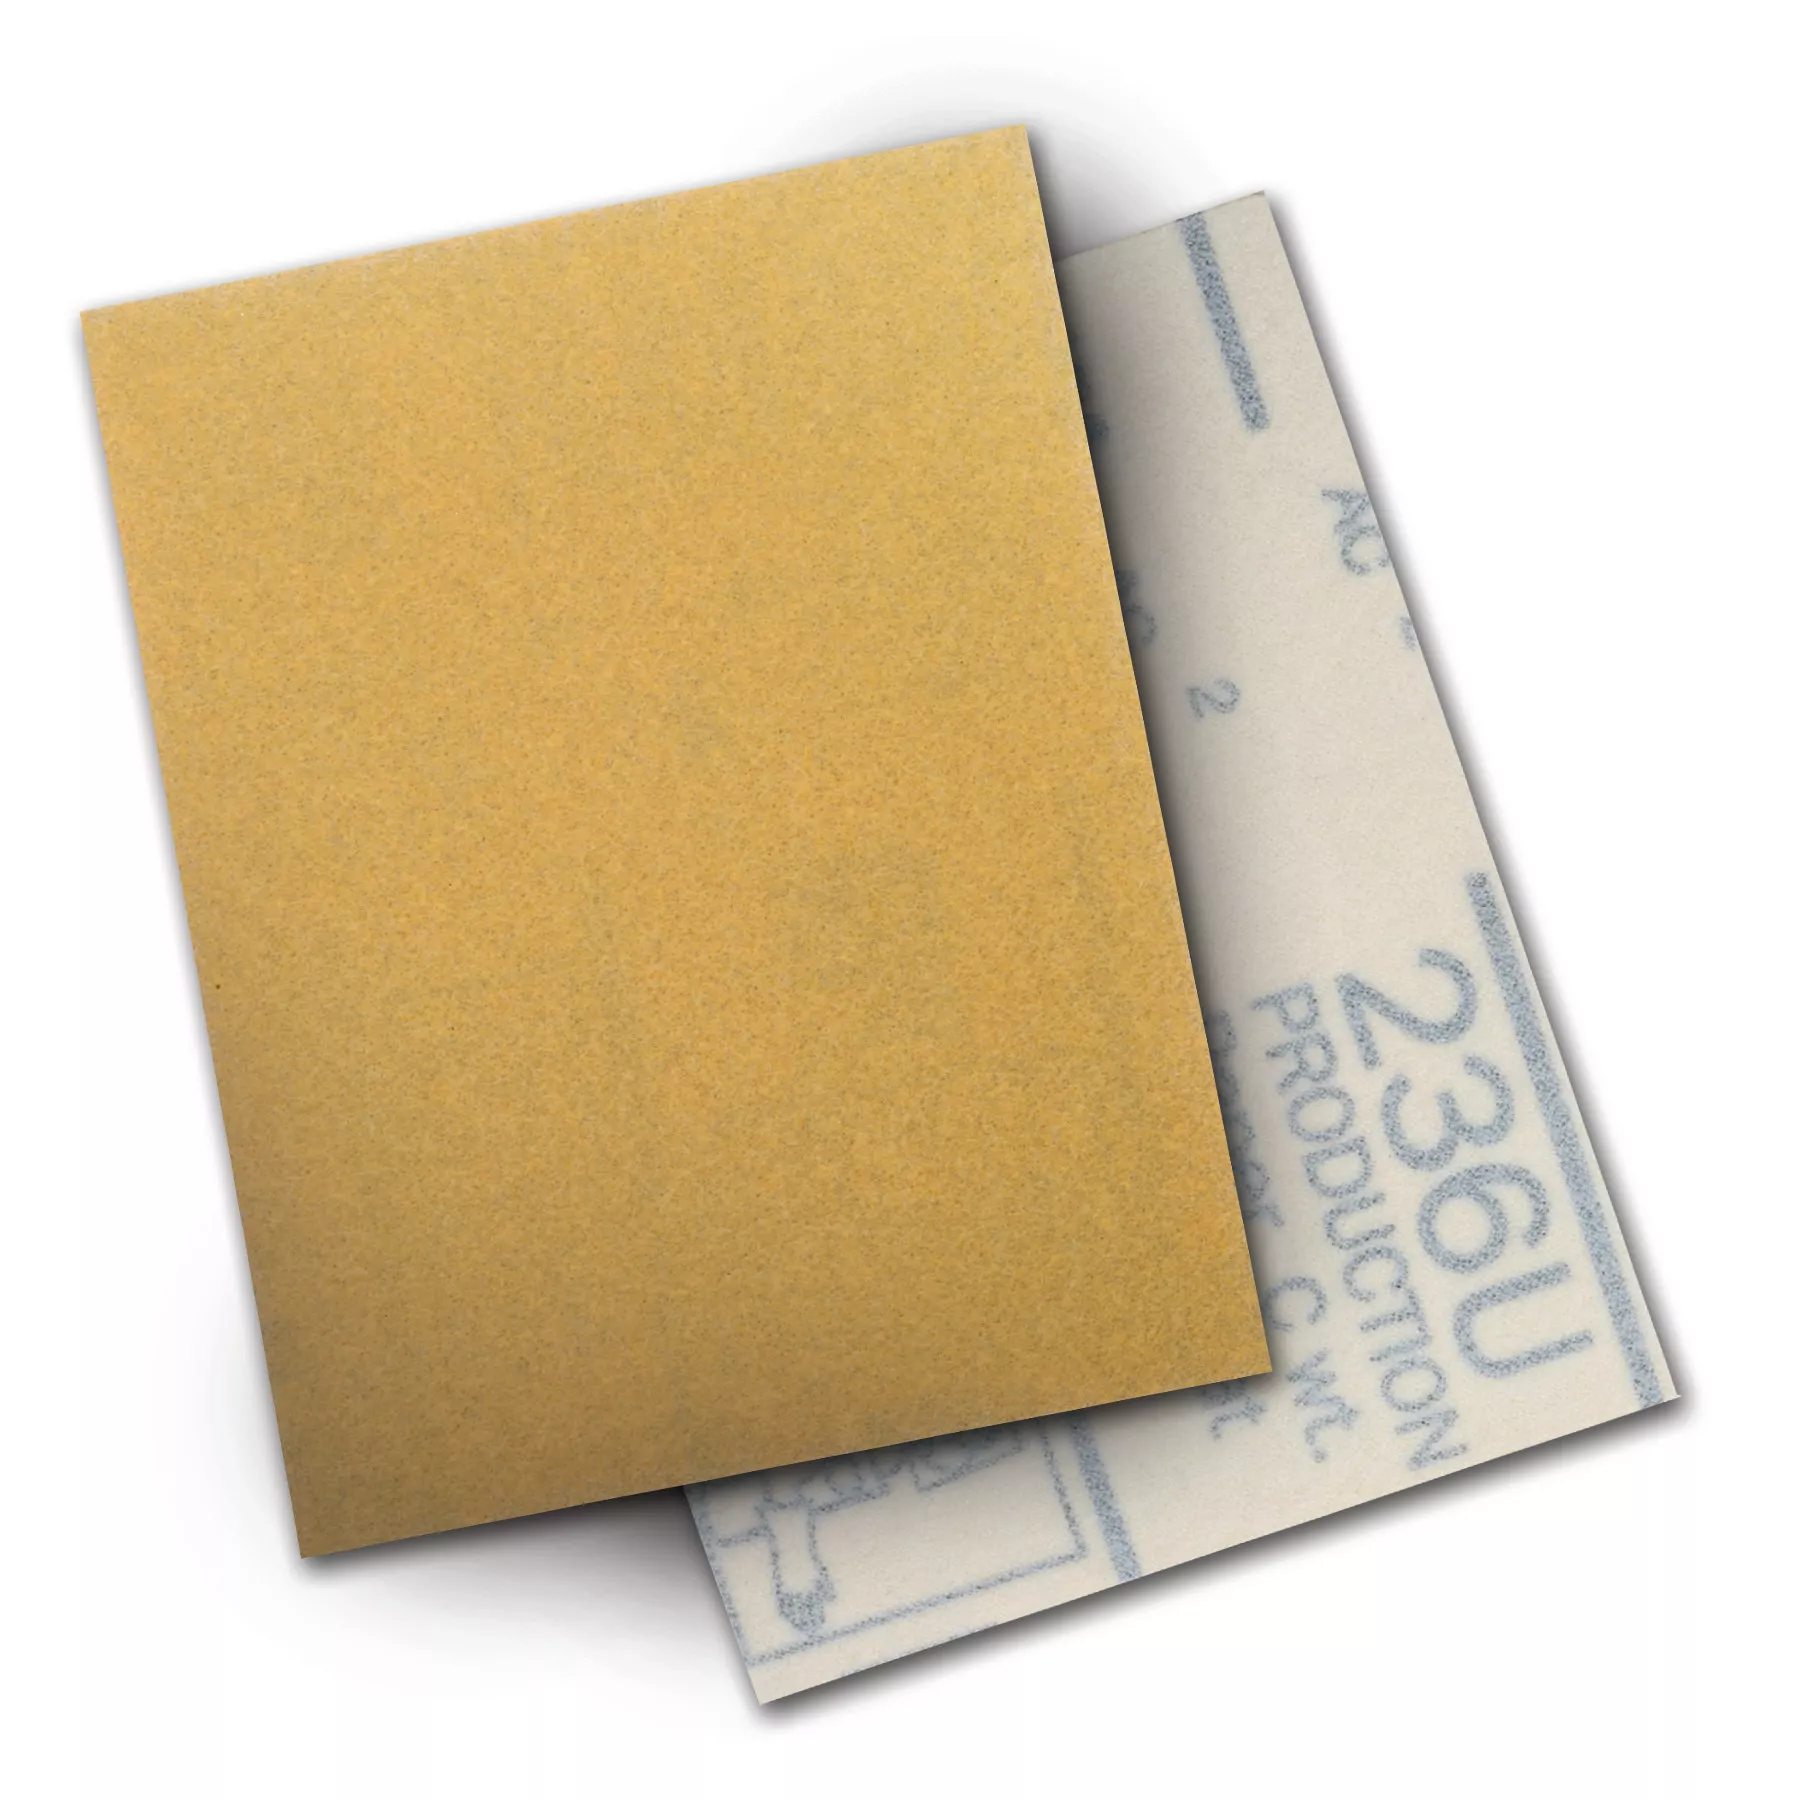 3M™ Hookit™ Paper Sheet 236U, P80 C-weight, 3 in x 4 in, 50/Carton, 500
ea/Case